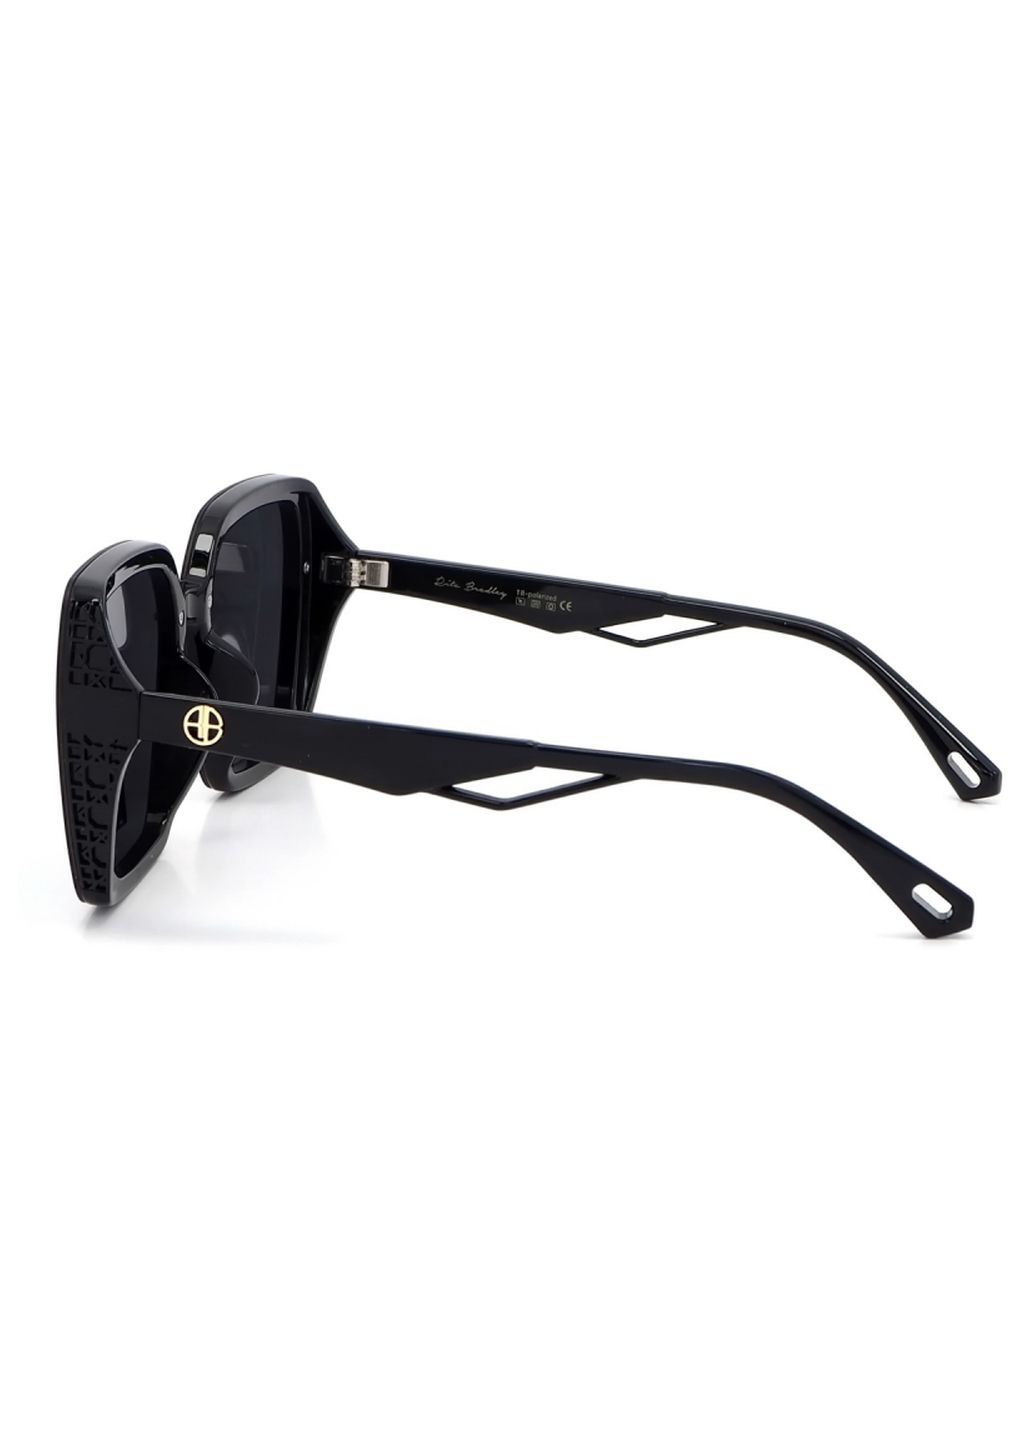 Купить Женские солнцезащитные очки Rita Bradley с поляризацией RB730 112072 в интернет-магазине